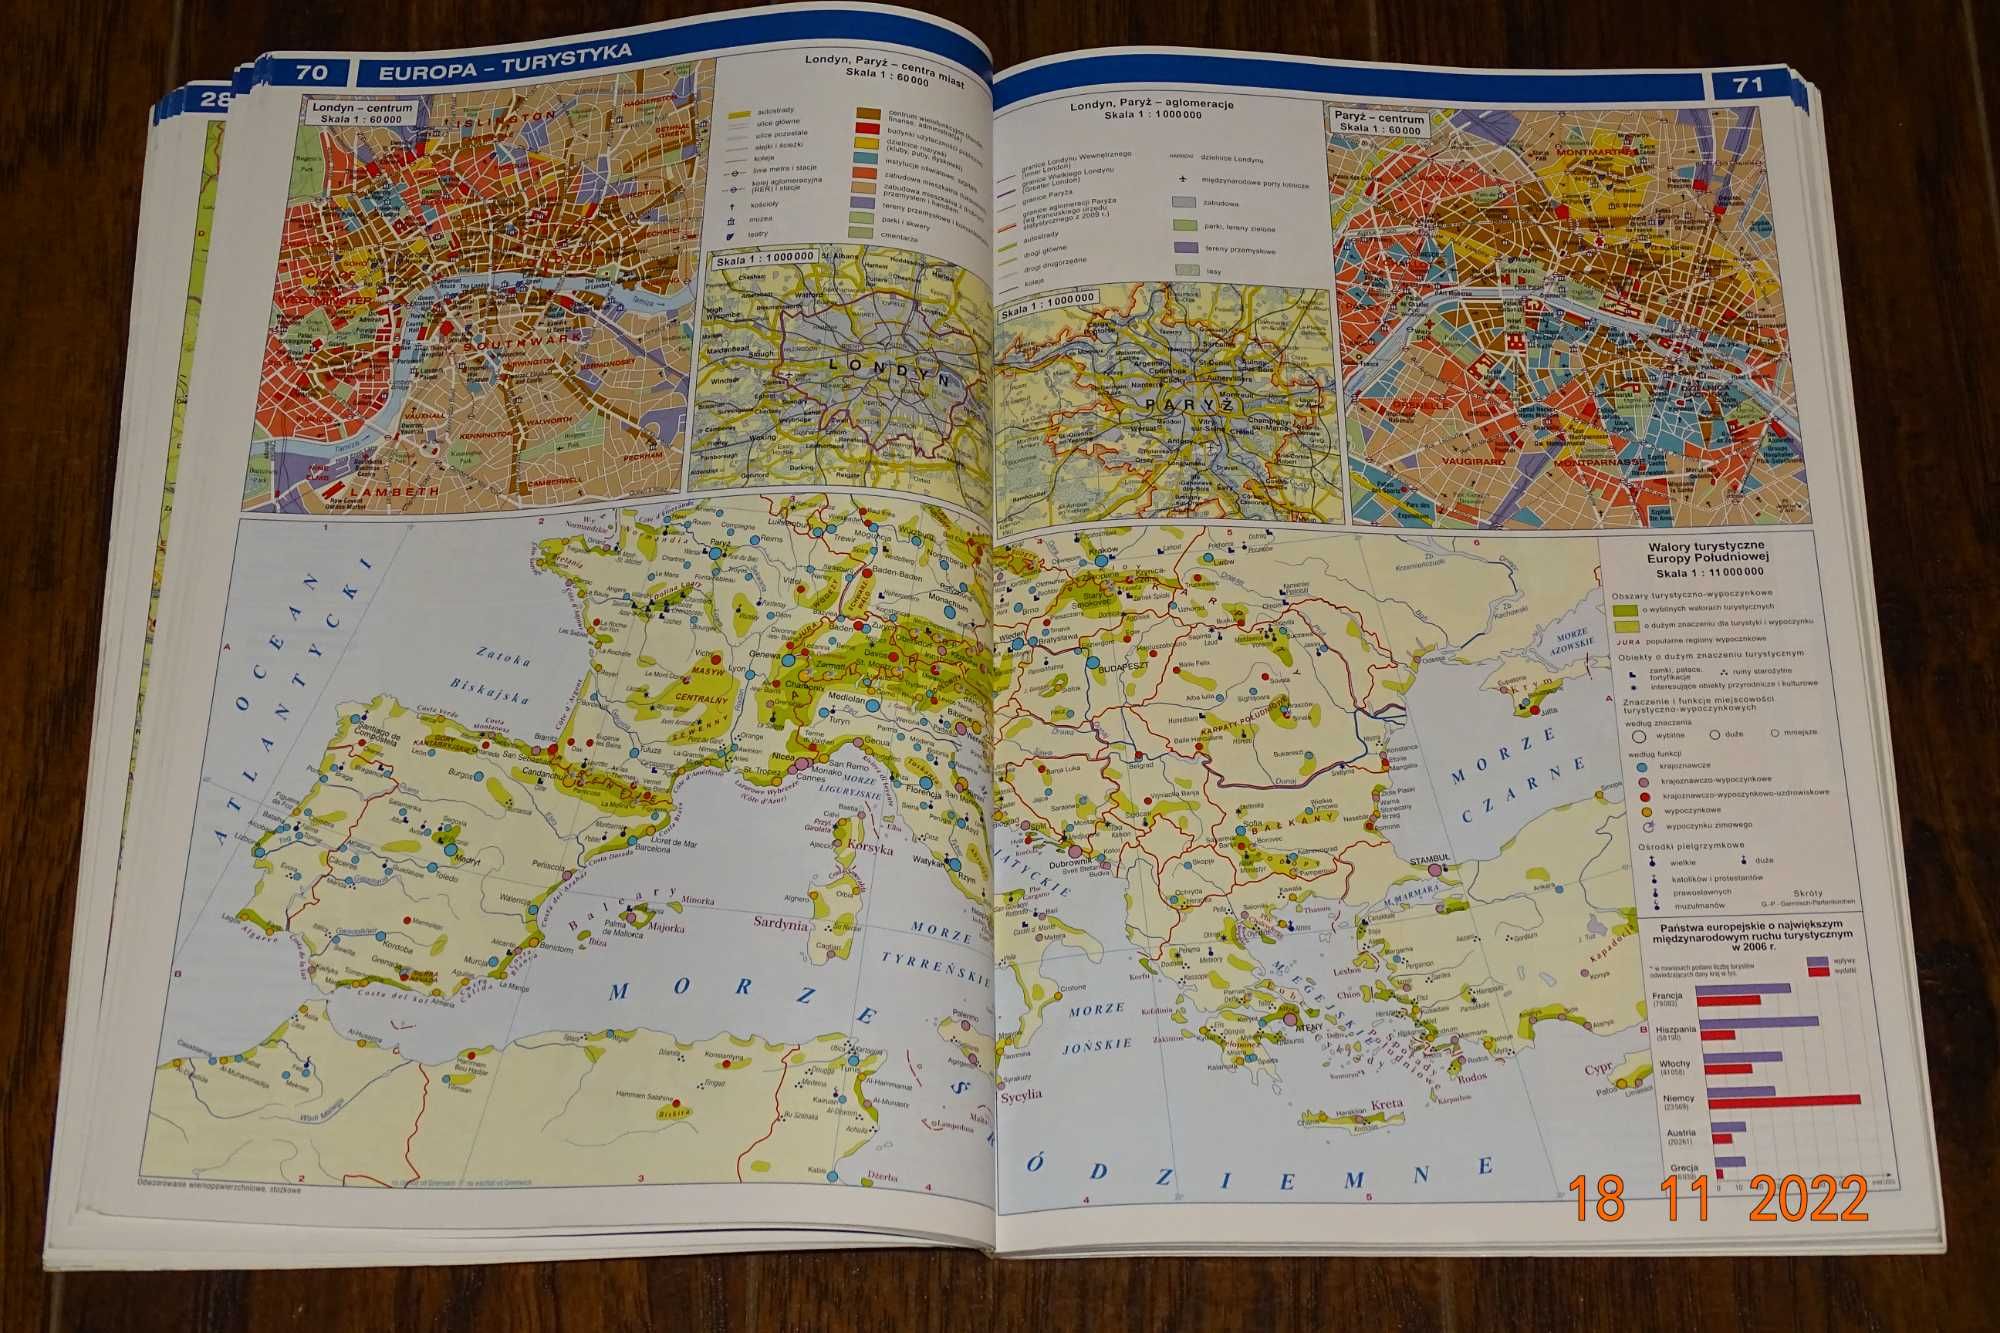 Atlas geograficzny Polska, kontynenty, świat